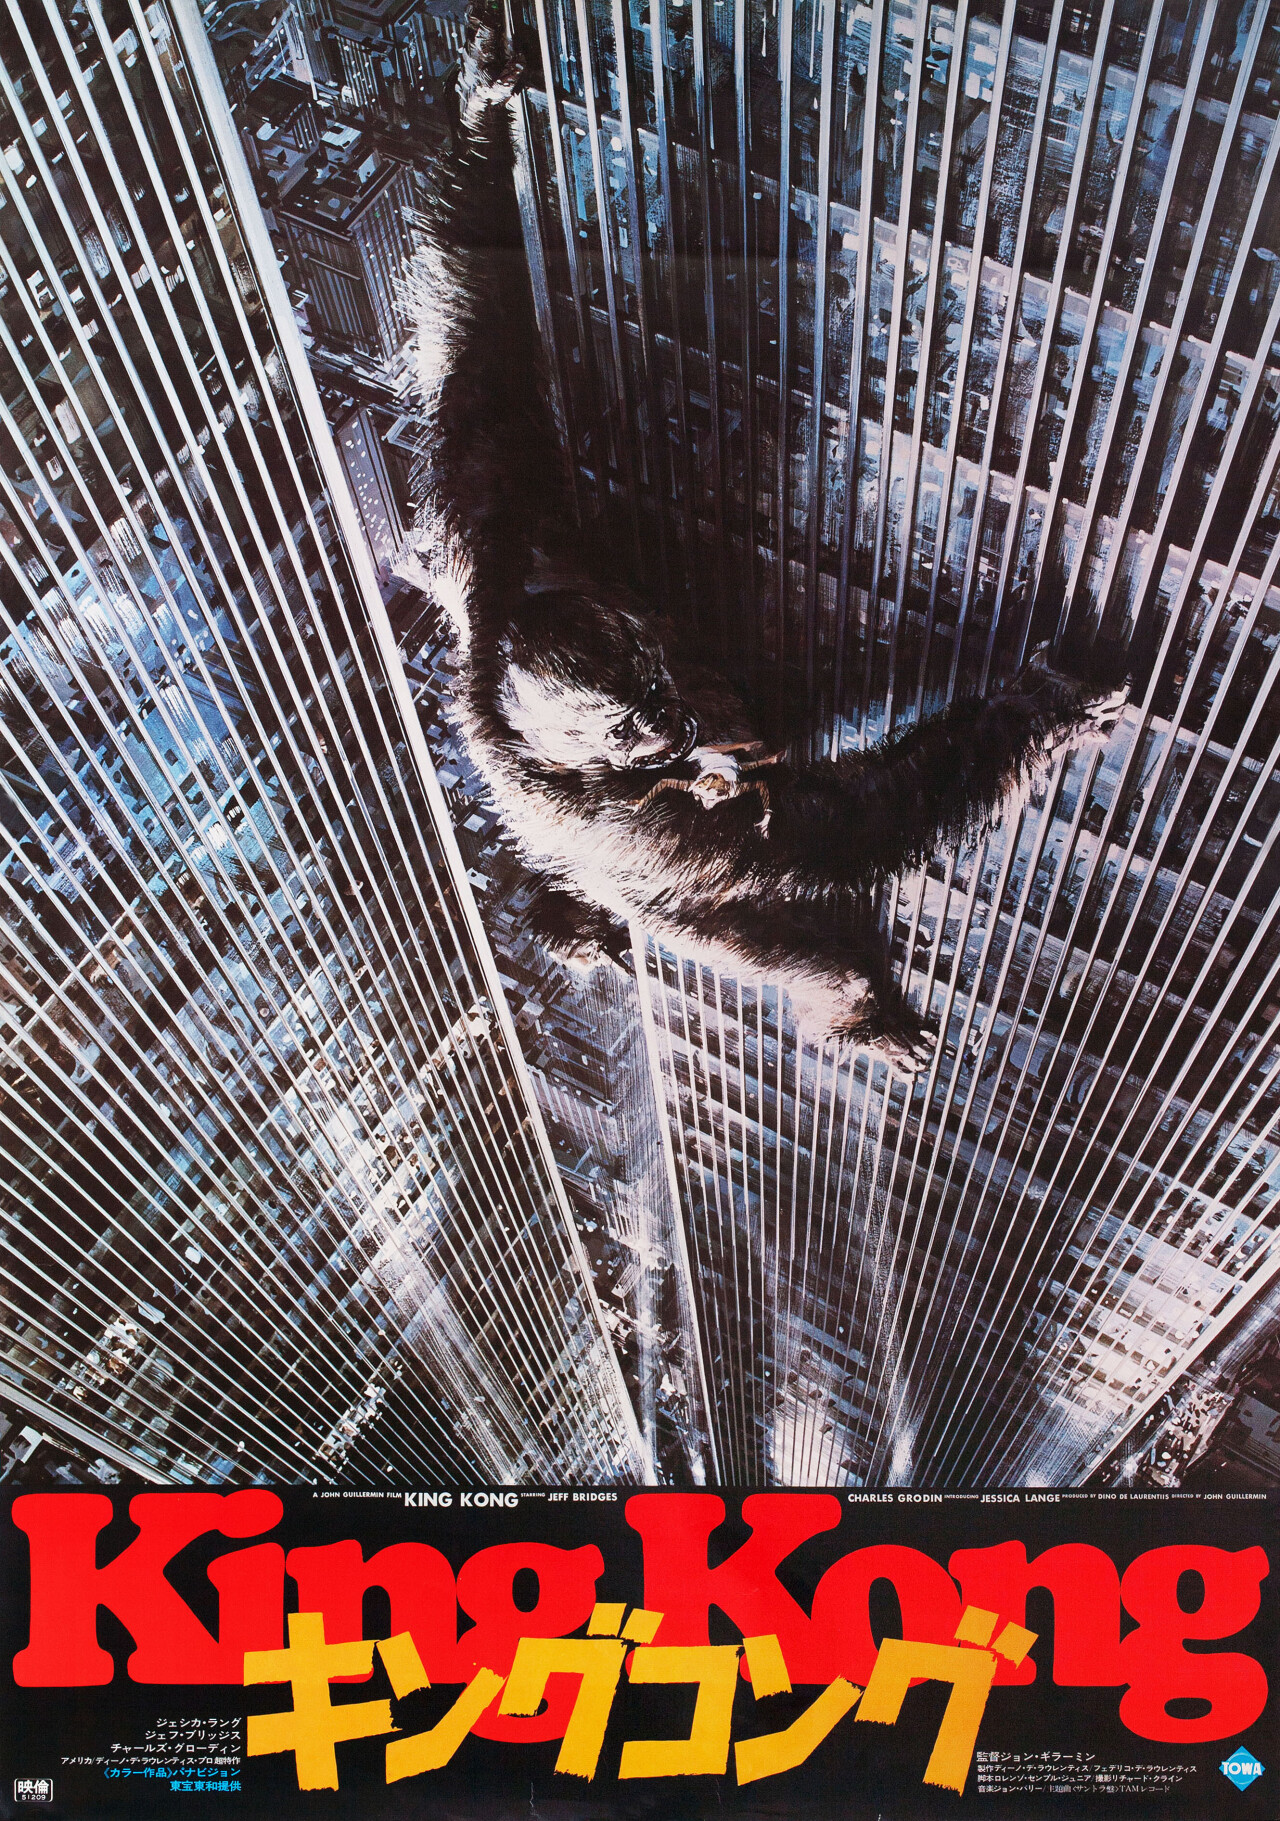 Кинг Конг (King Kong, 1976), режиссёр Джон Гиллермин, японский постер к фильму, автор Джон Берки (монстры, 1976 год) (4)